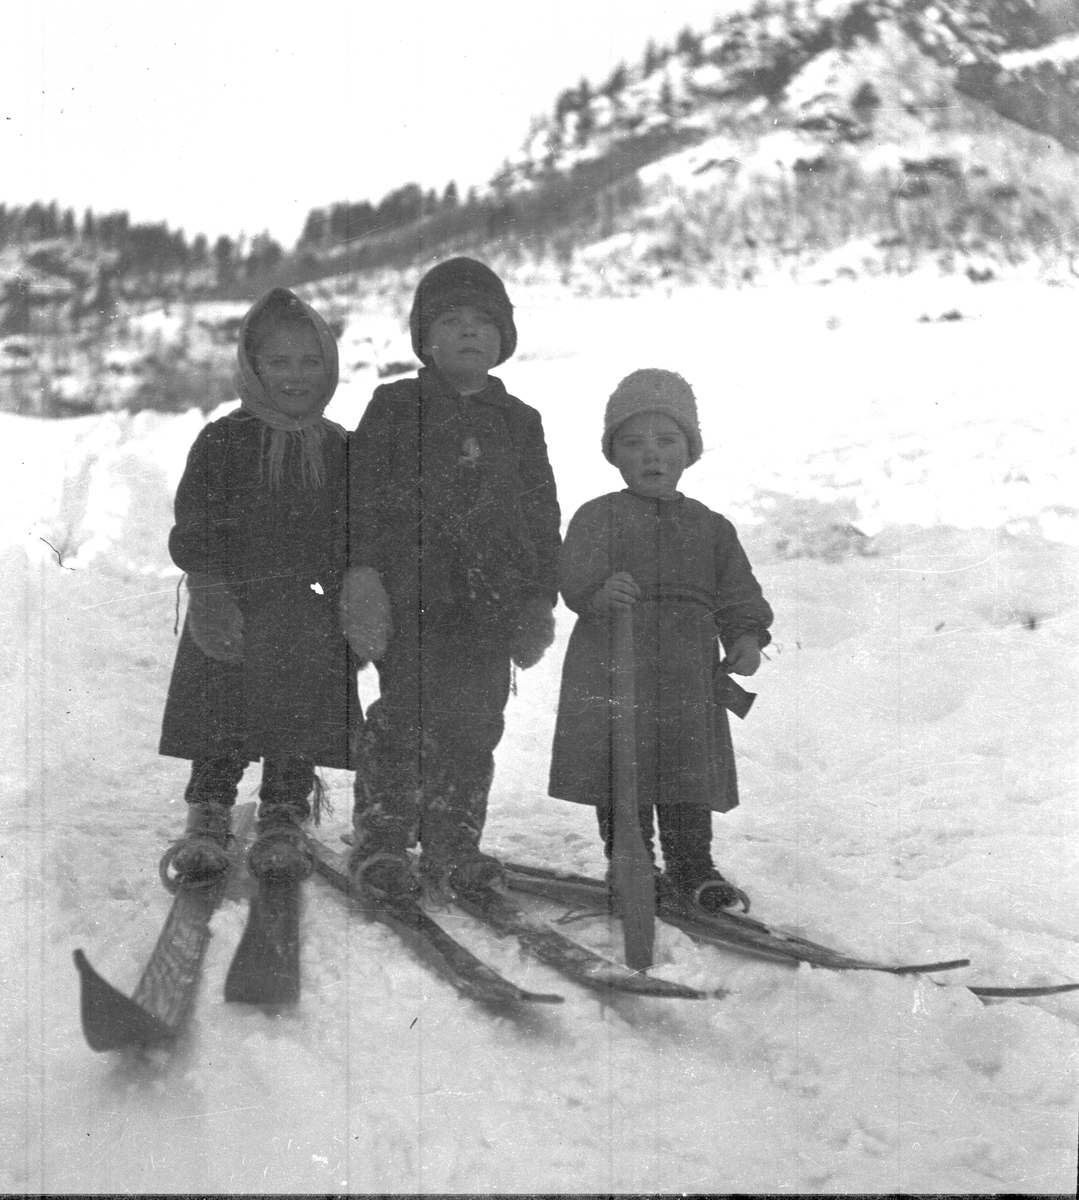 Fotoarkiv etter Aanund Olavson Edland. Utendørsportrett av Sigrid, Olav og Andres Aa. Edland på ski i vinterlandskap.